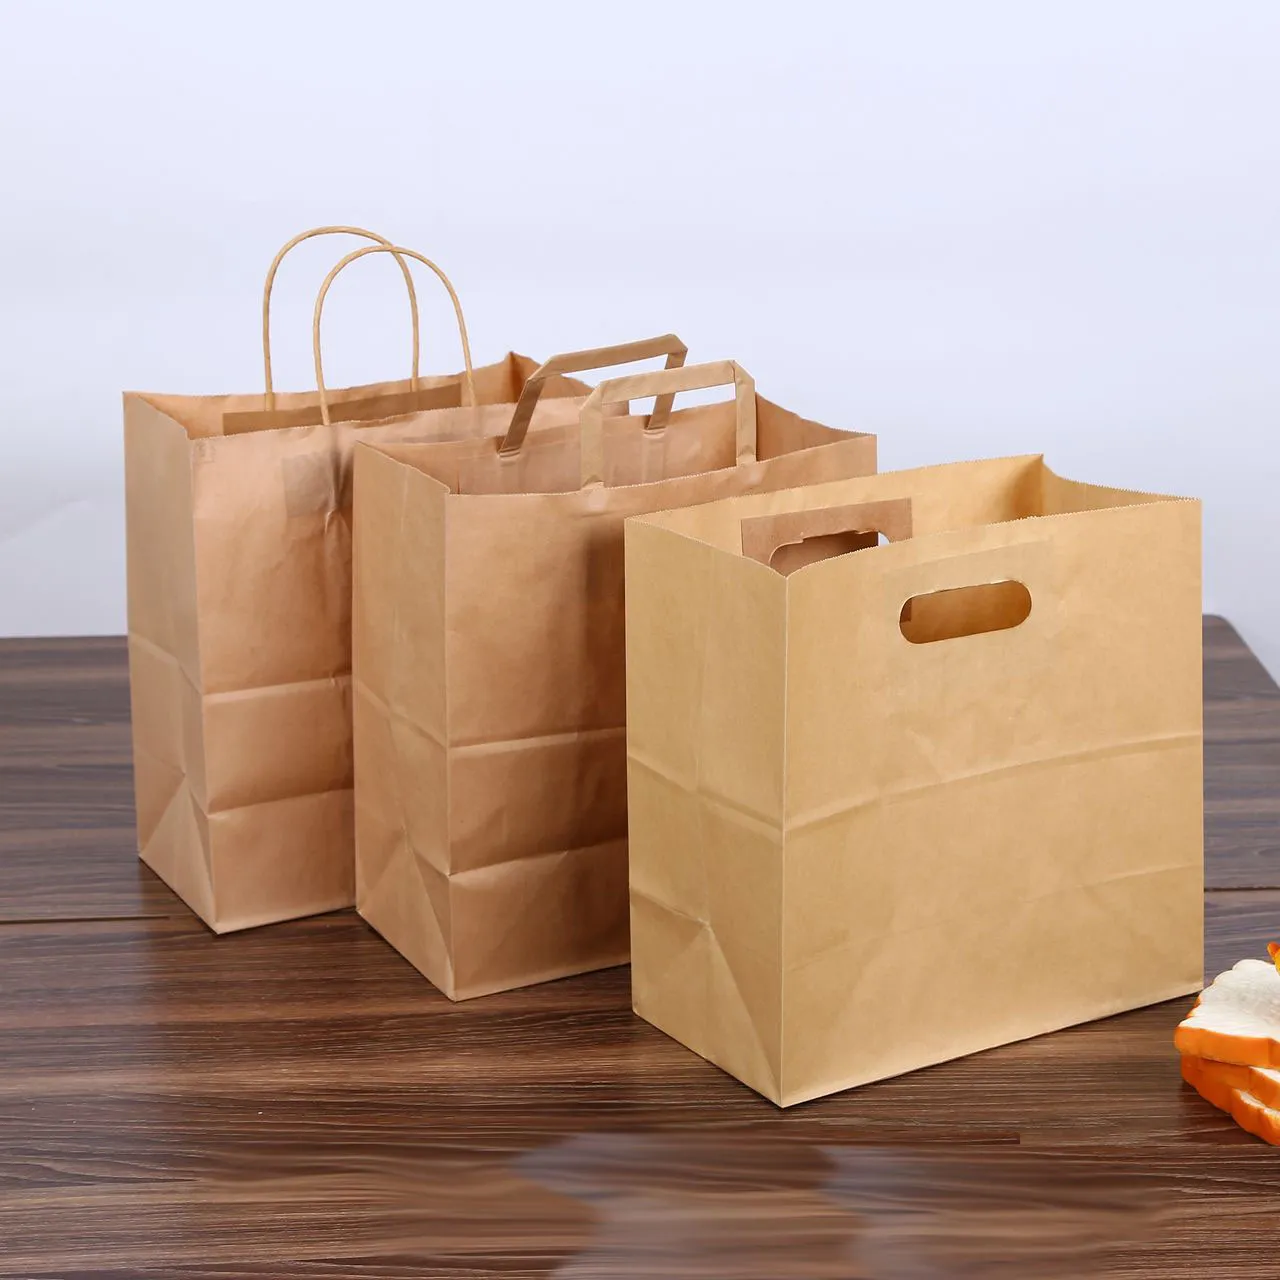 28x28 + 15 cm papier kraft sac à pain emballage fourre-tout poignée marron découpé baguette poinçonnage cuisson portable sac en papier LOGO personnalisé